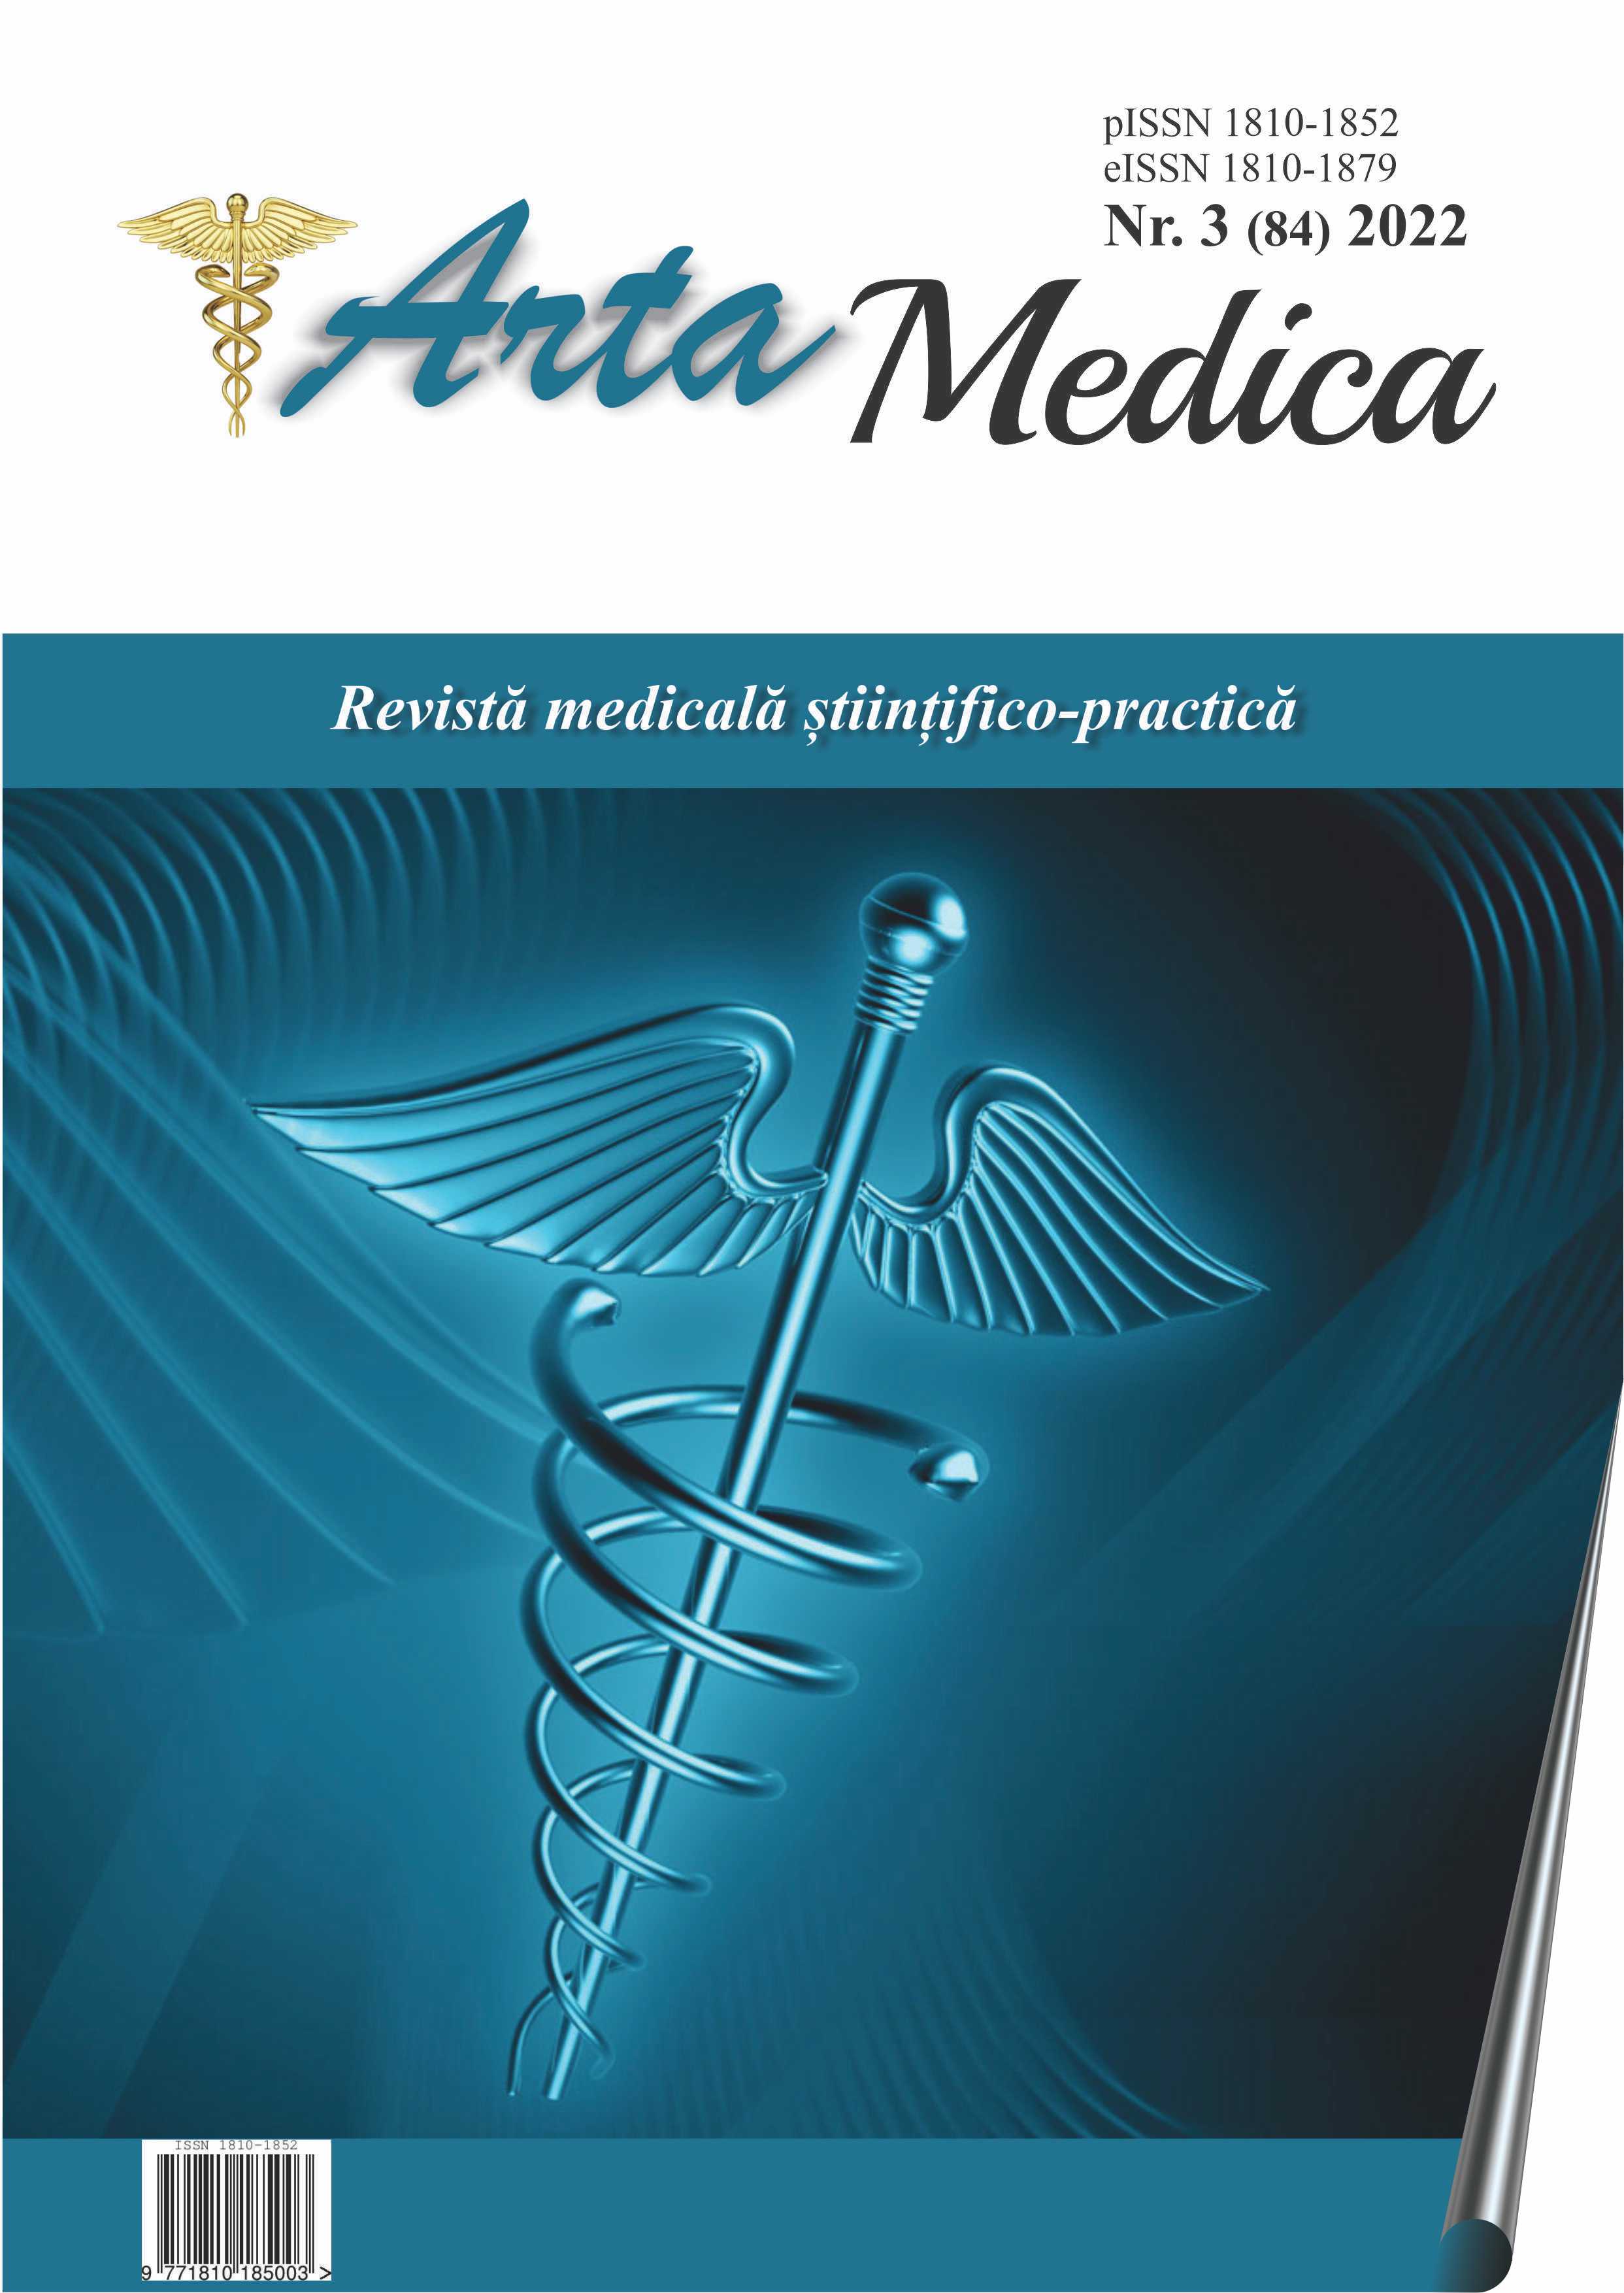 					View Vol. 84 No. 3 (2022): Arta Medica
				